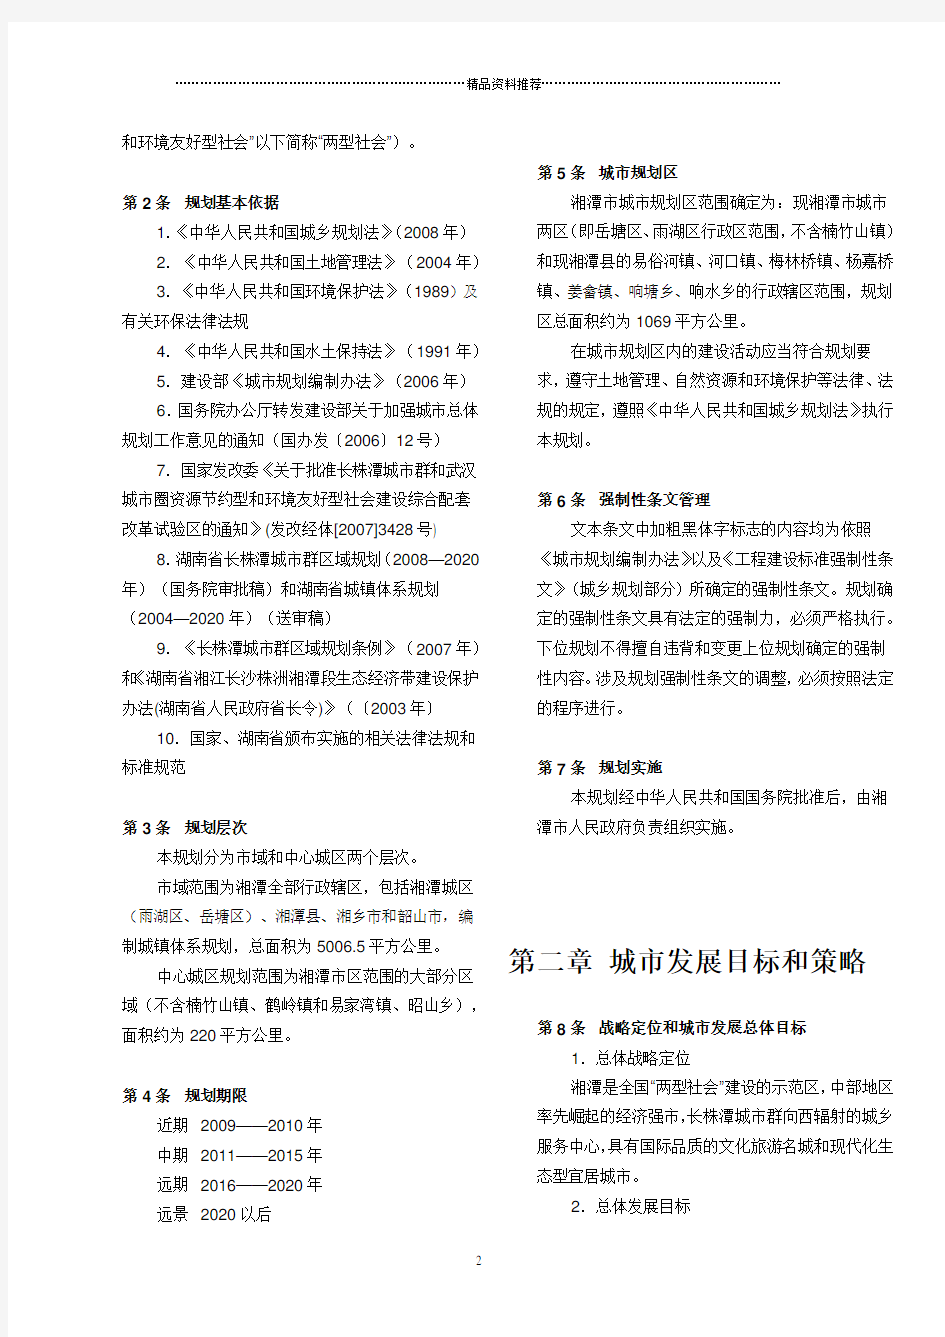 湘潭市城市总体规划(XXXX-2020年)两栏版